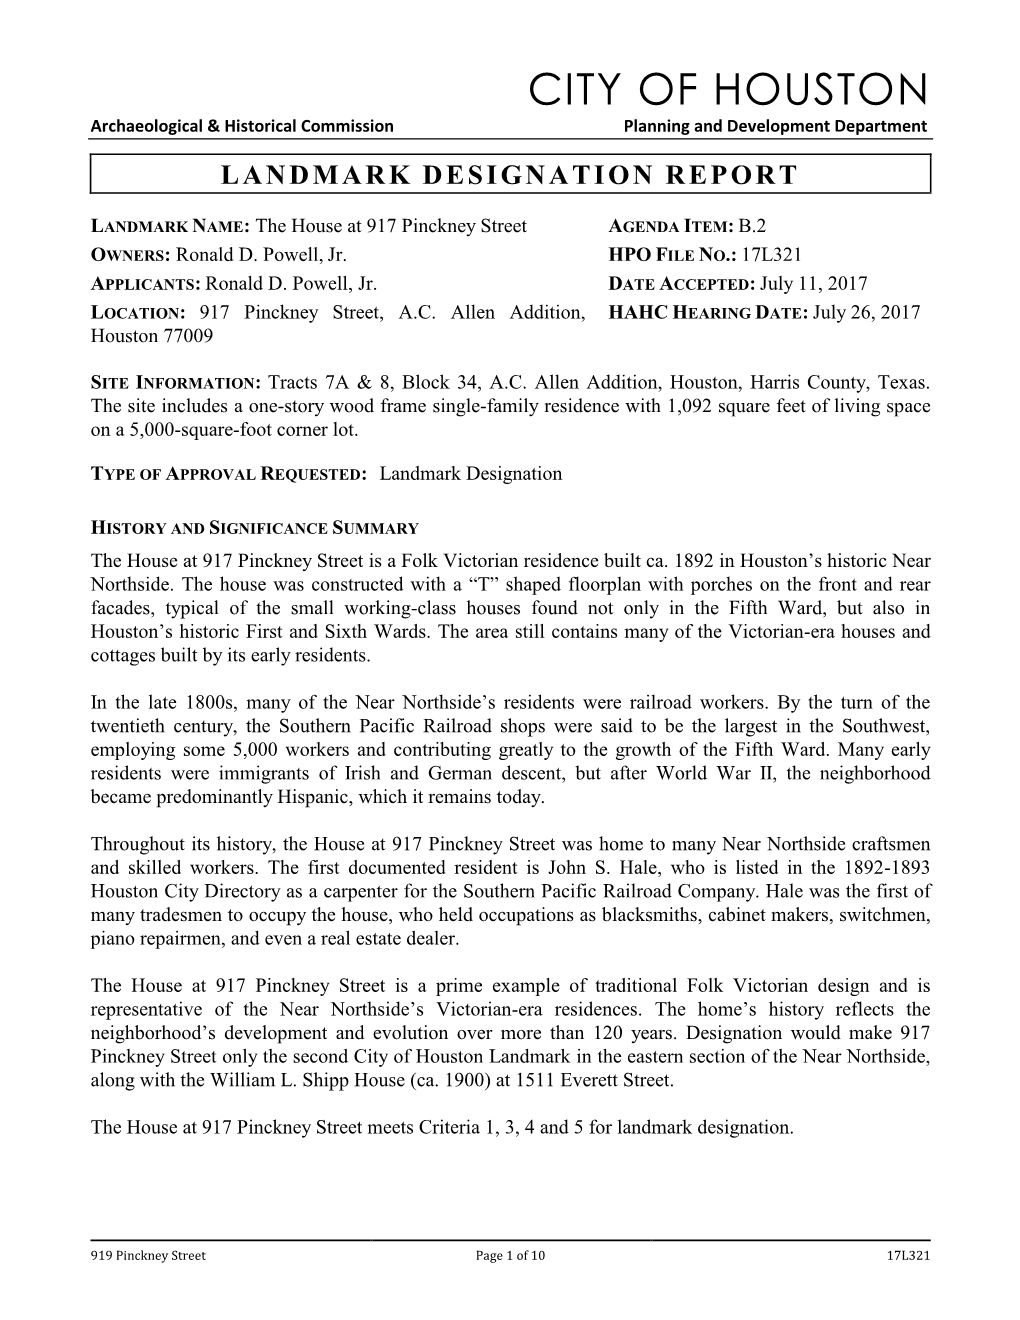 Landmark Designation Report